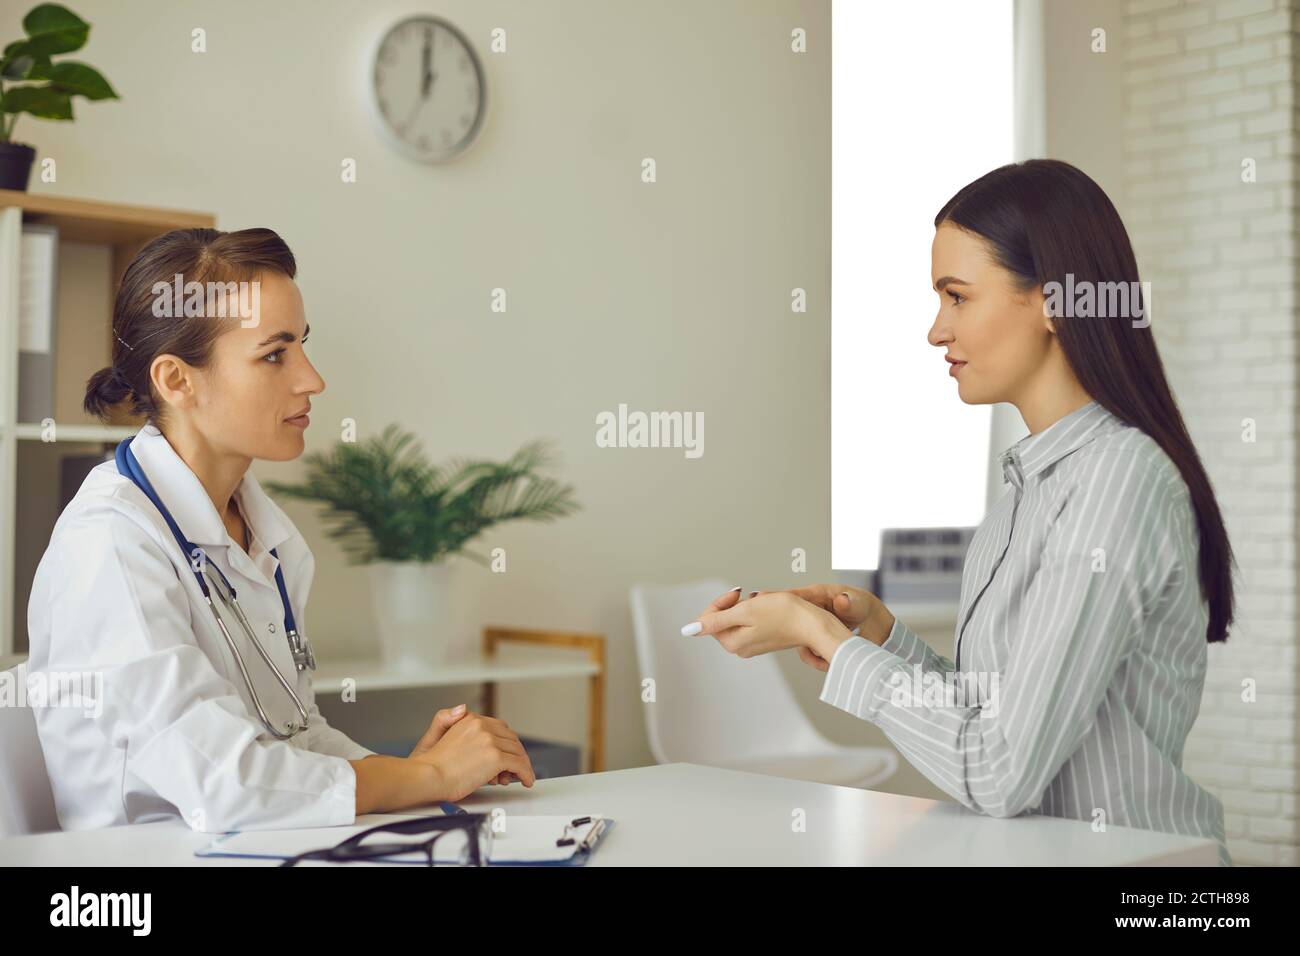 Une jeune patiente informe le médecin de ses problèmes de santé, décrit ses symptômes et demande des conseils Banque D'Images